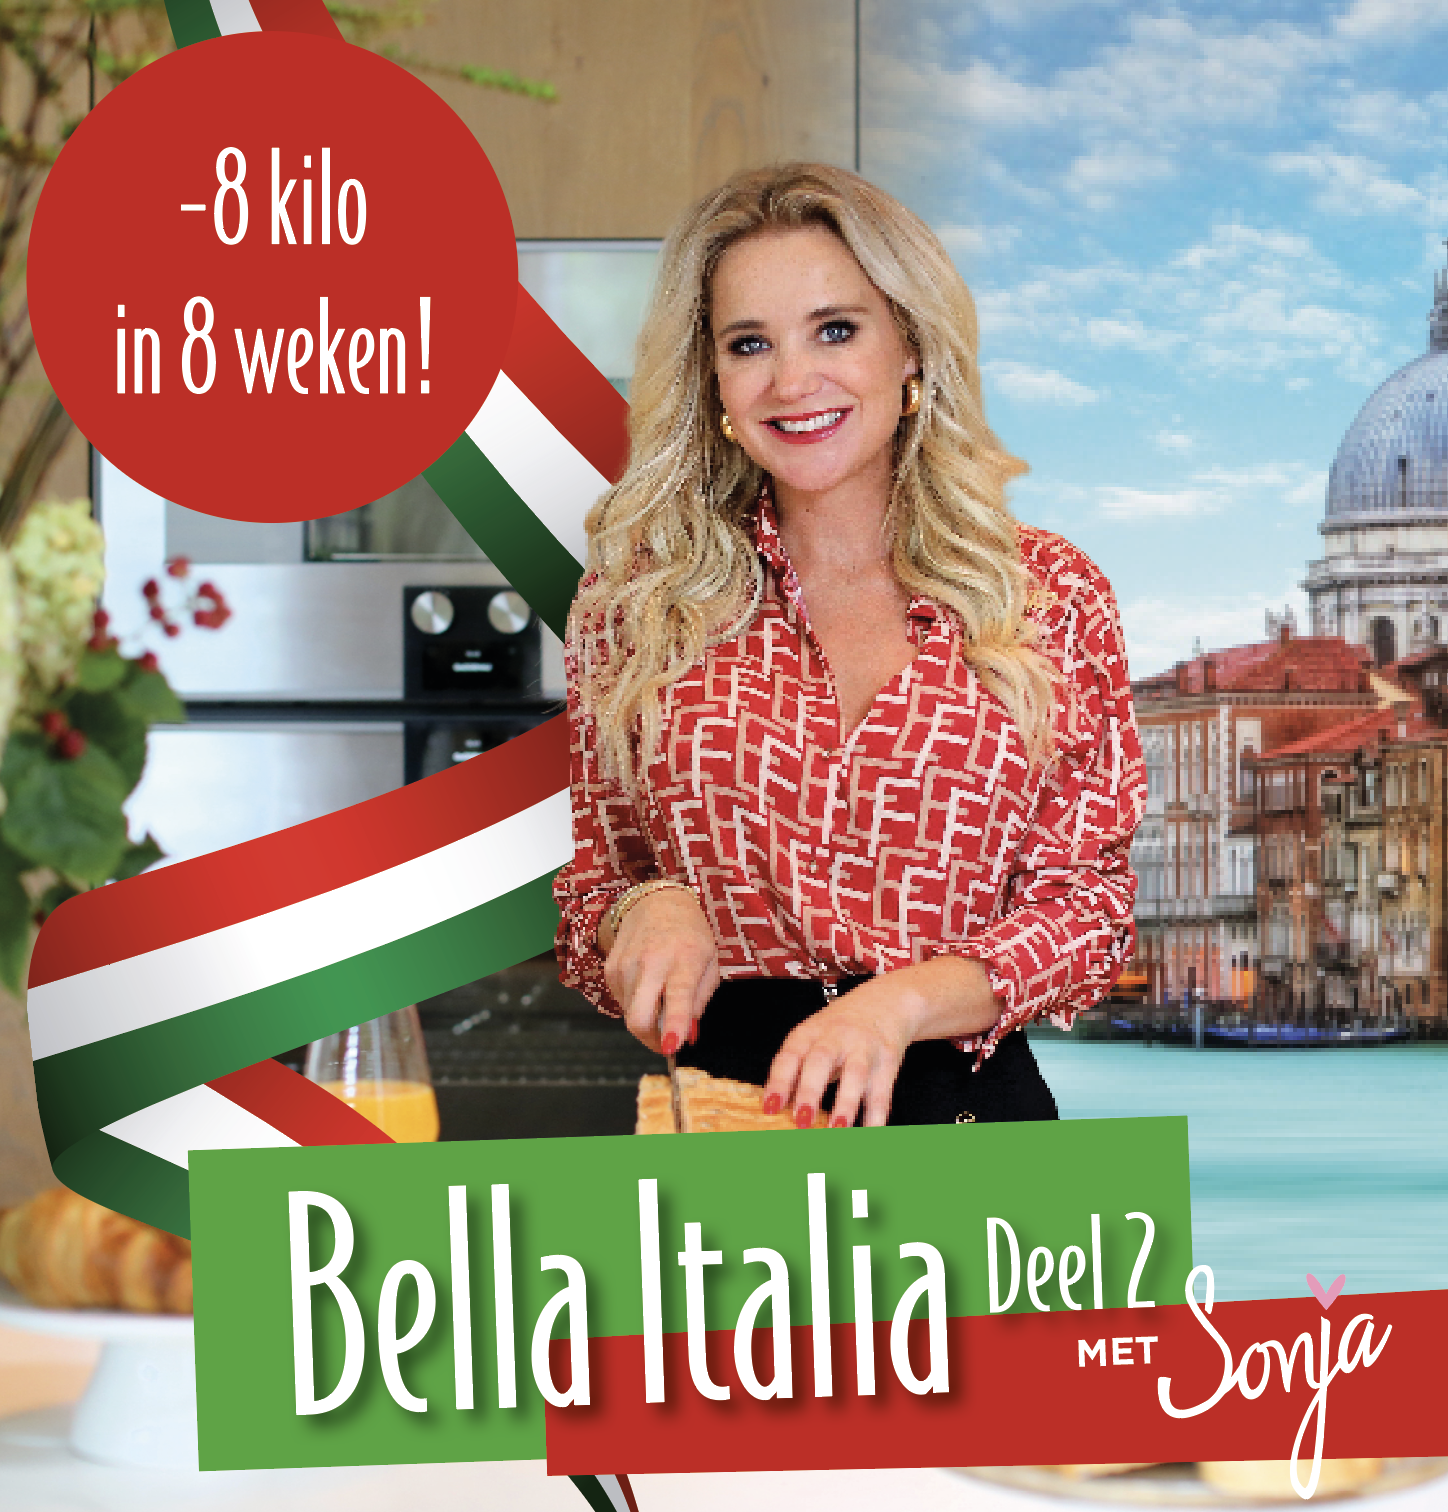 Verbazingwekkend Sonja's Bella Italia Deel 2 - Sonja Bakker TR-37